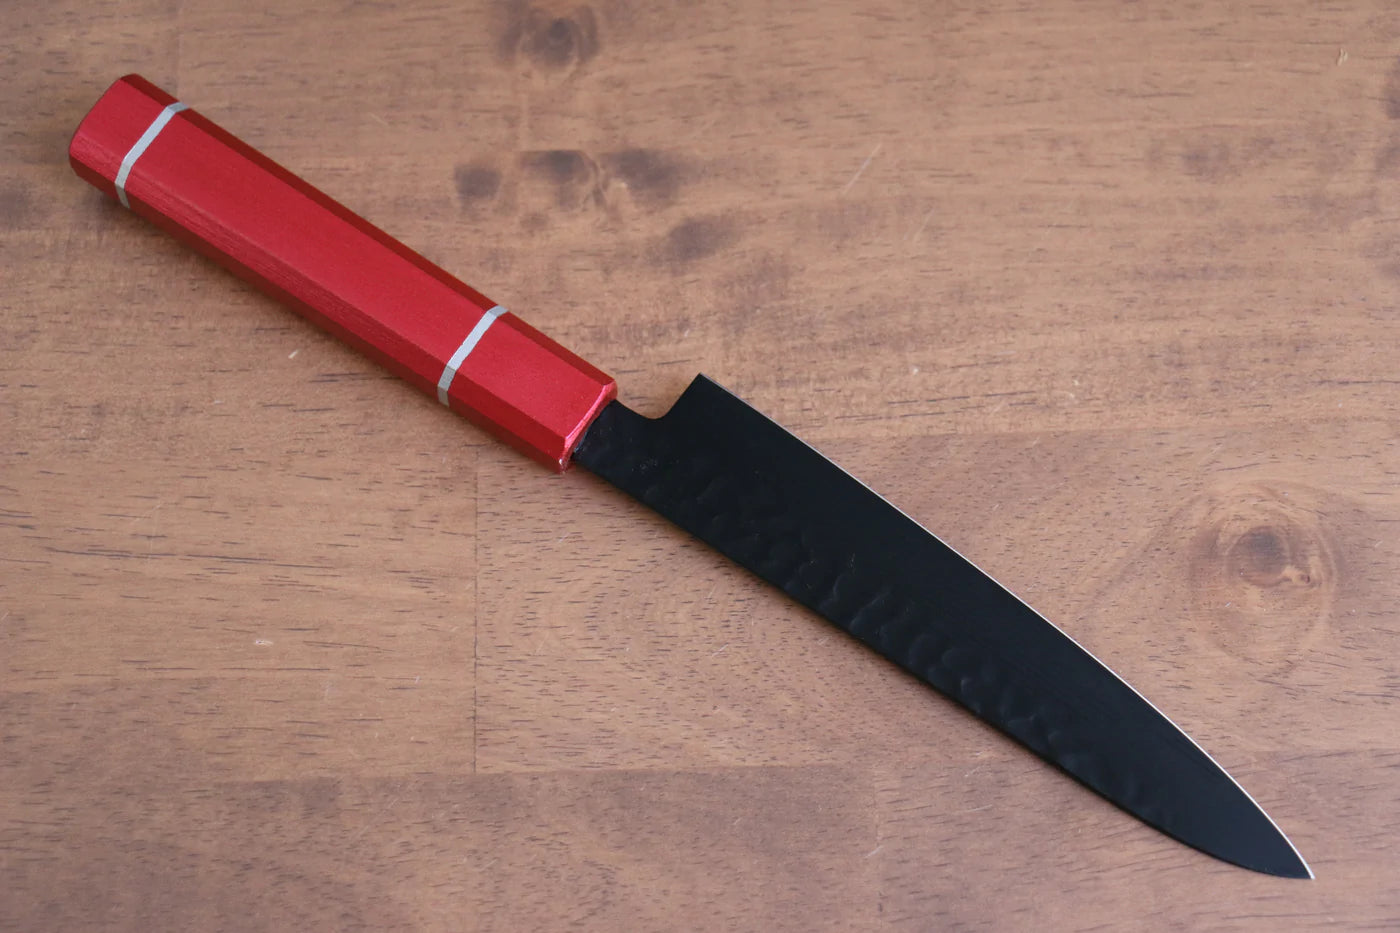 Thương hiệu Sakai Takayuki Hắc Ảnh Kurokage VG10 Rèn thủ công Mạ Teflon Dao nhỏ đa năng Petty dao Nhật 150mm chuôi dao gỗ Sồi sơn mài  (Kouseki)